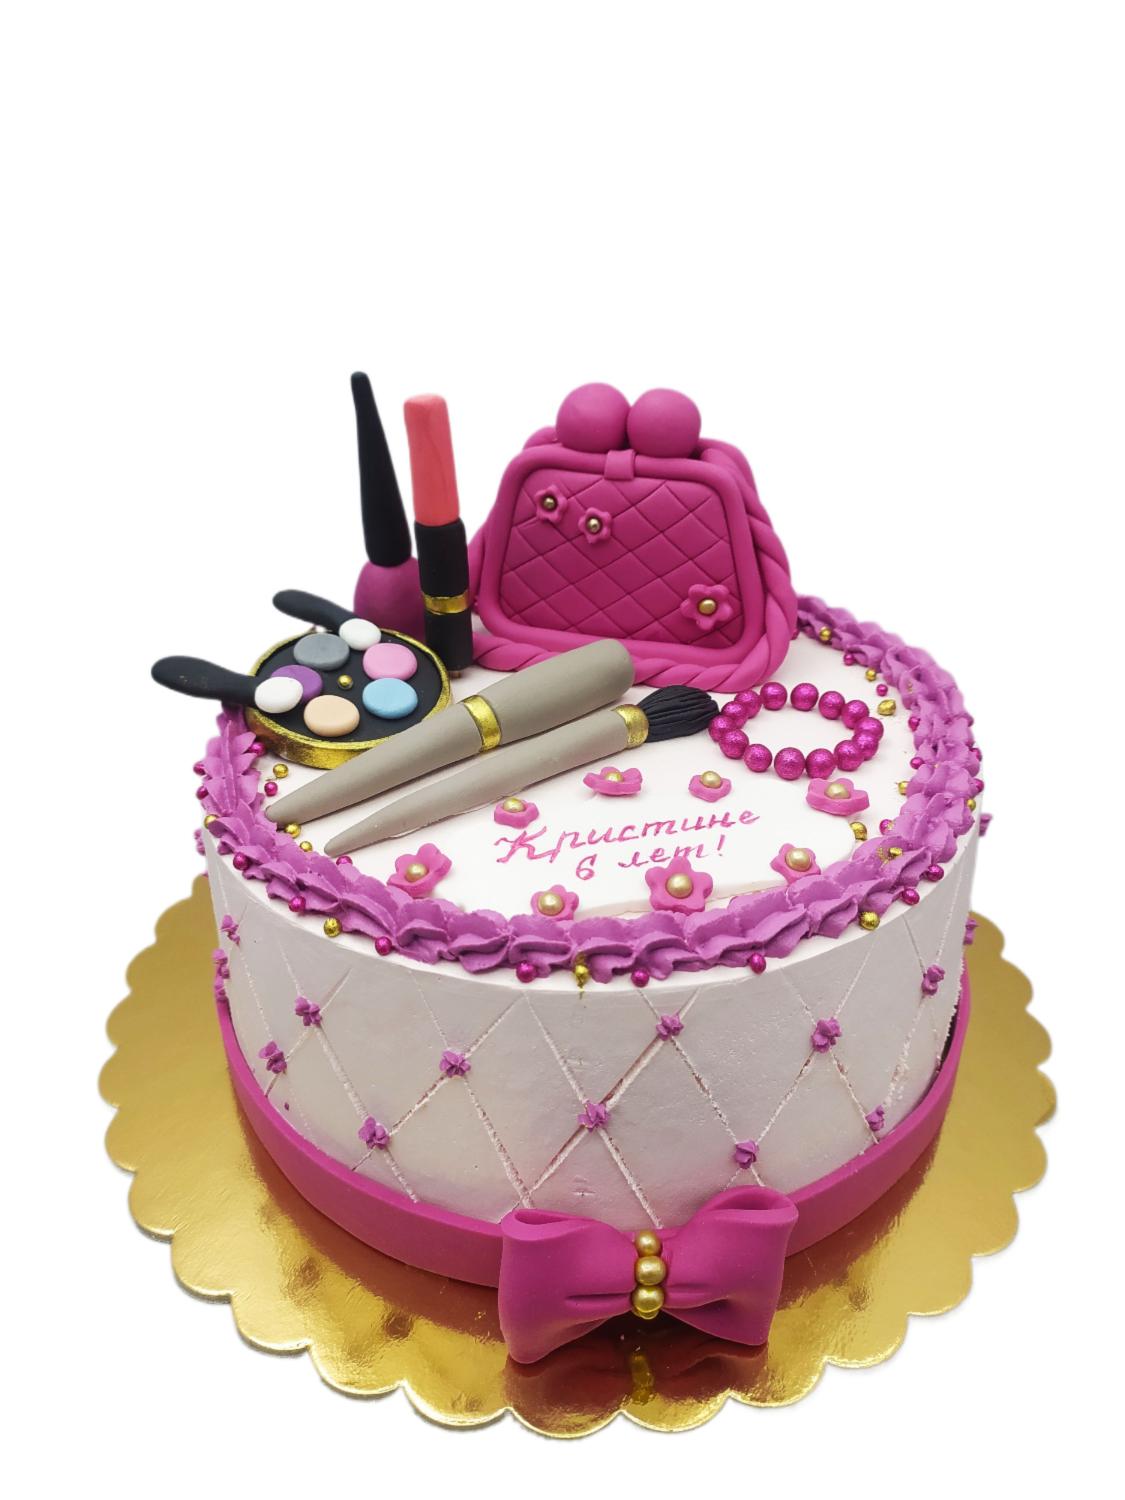 Детский торт Ванильный с клубникой #101 в кондитерской cake64.ru фото